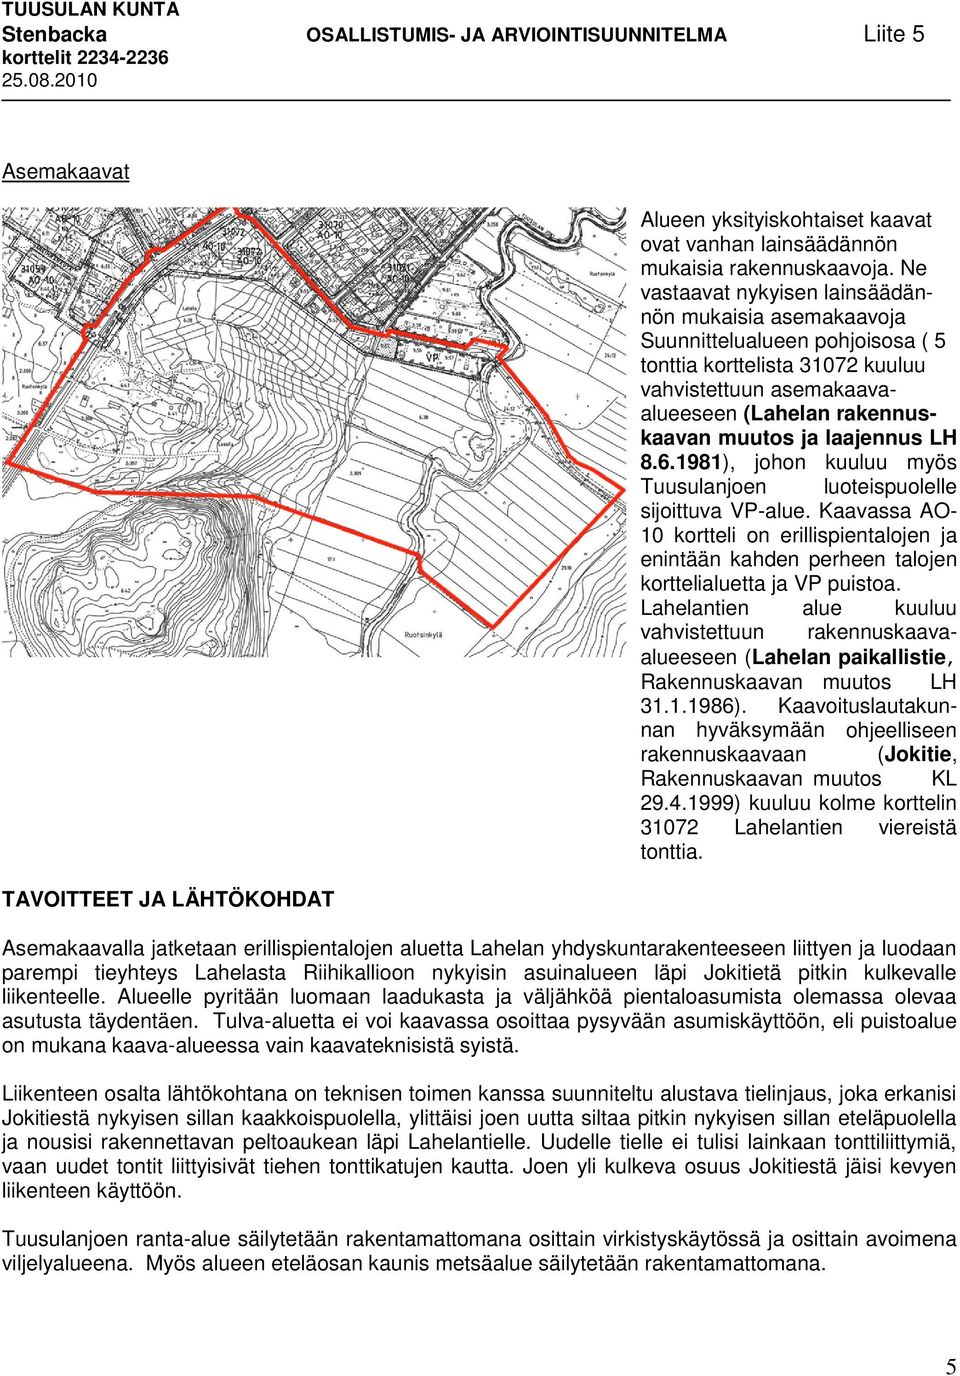 laajennus LH 8.6.1981), johon kuuluu myös Tuusulanjoen luoteispuolelle sijoittuva VP-alue.